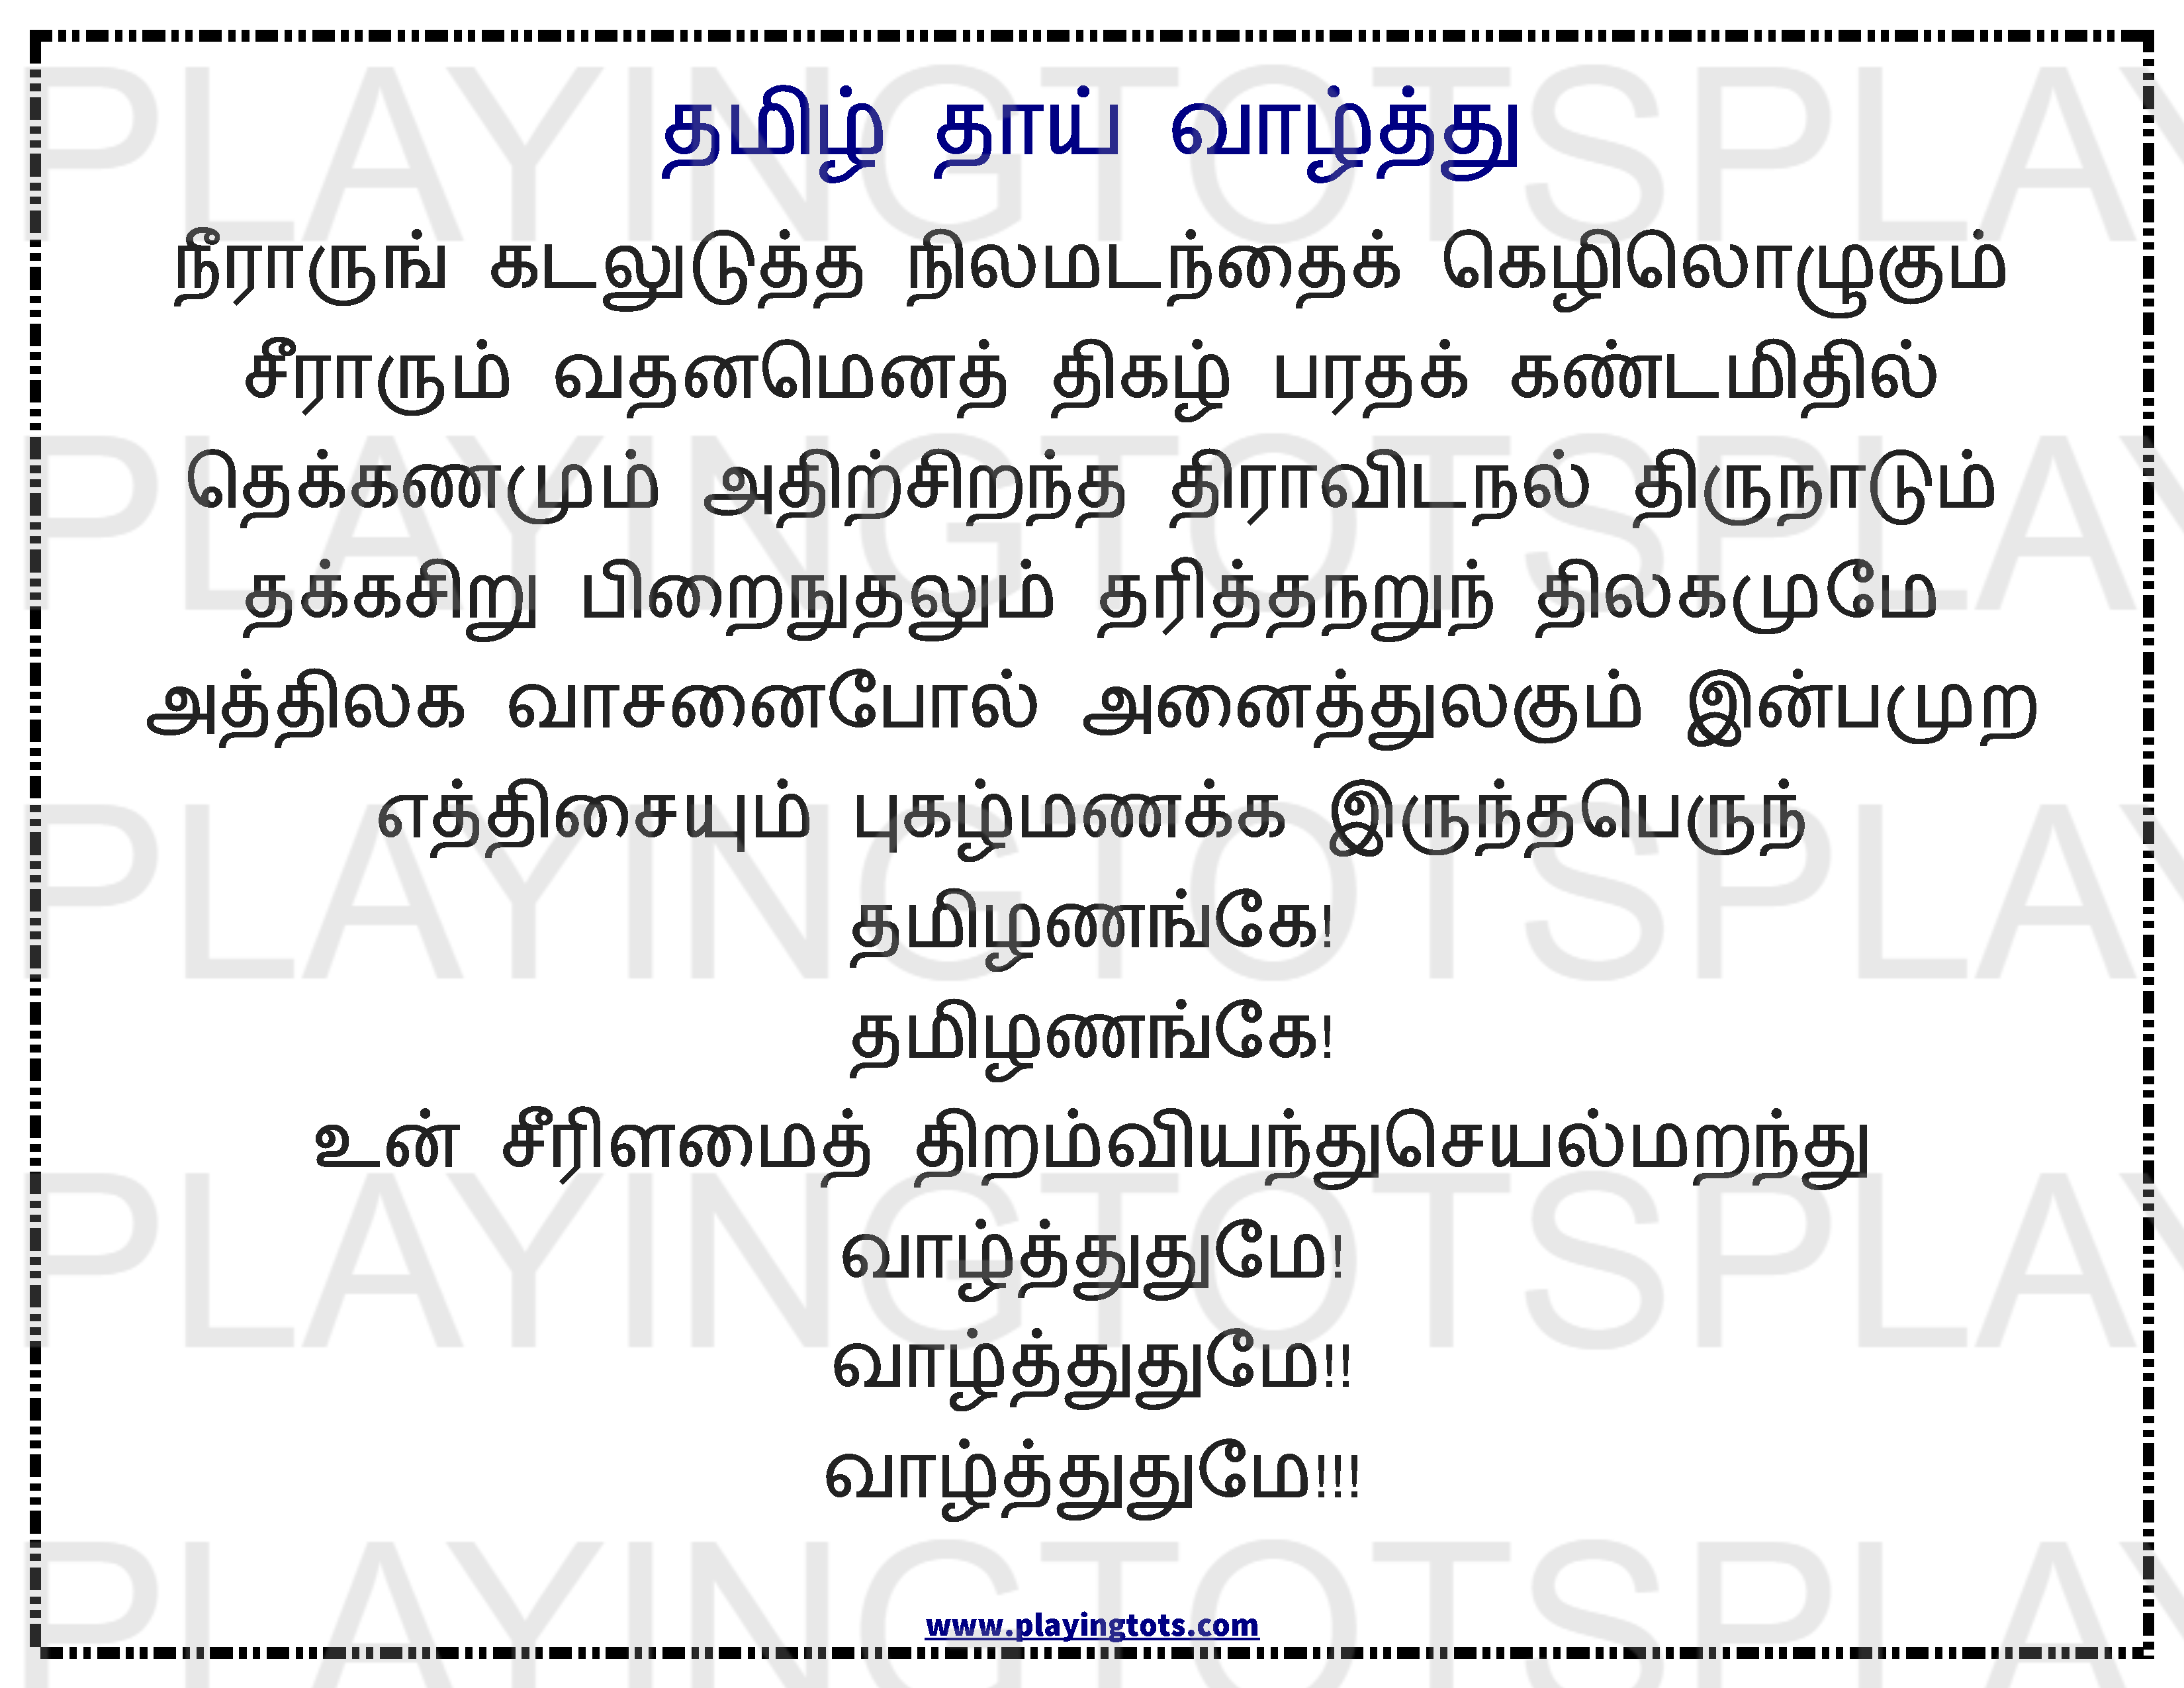 Tamil Poem Lyrics